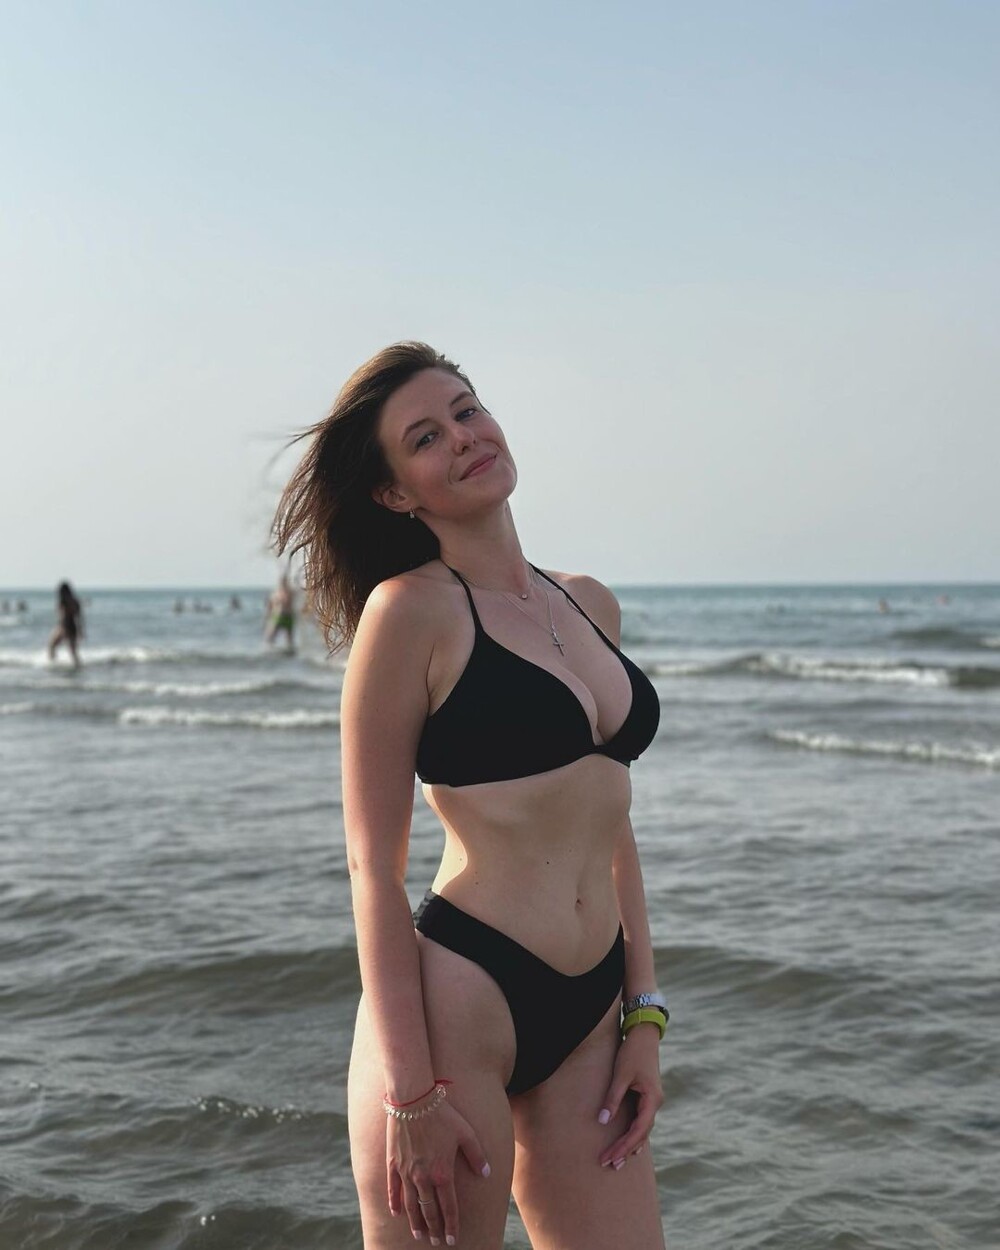 Каспийское море вместо Лазурного берега: фотоподборка с пляжей Махачкалы